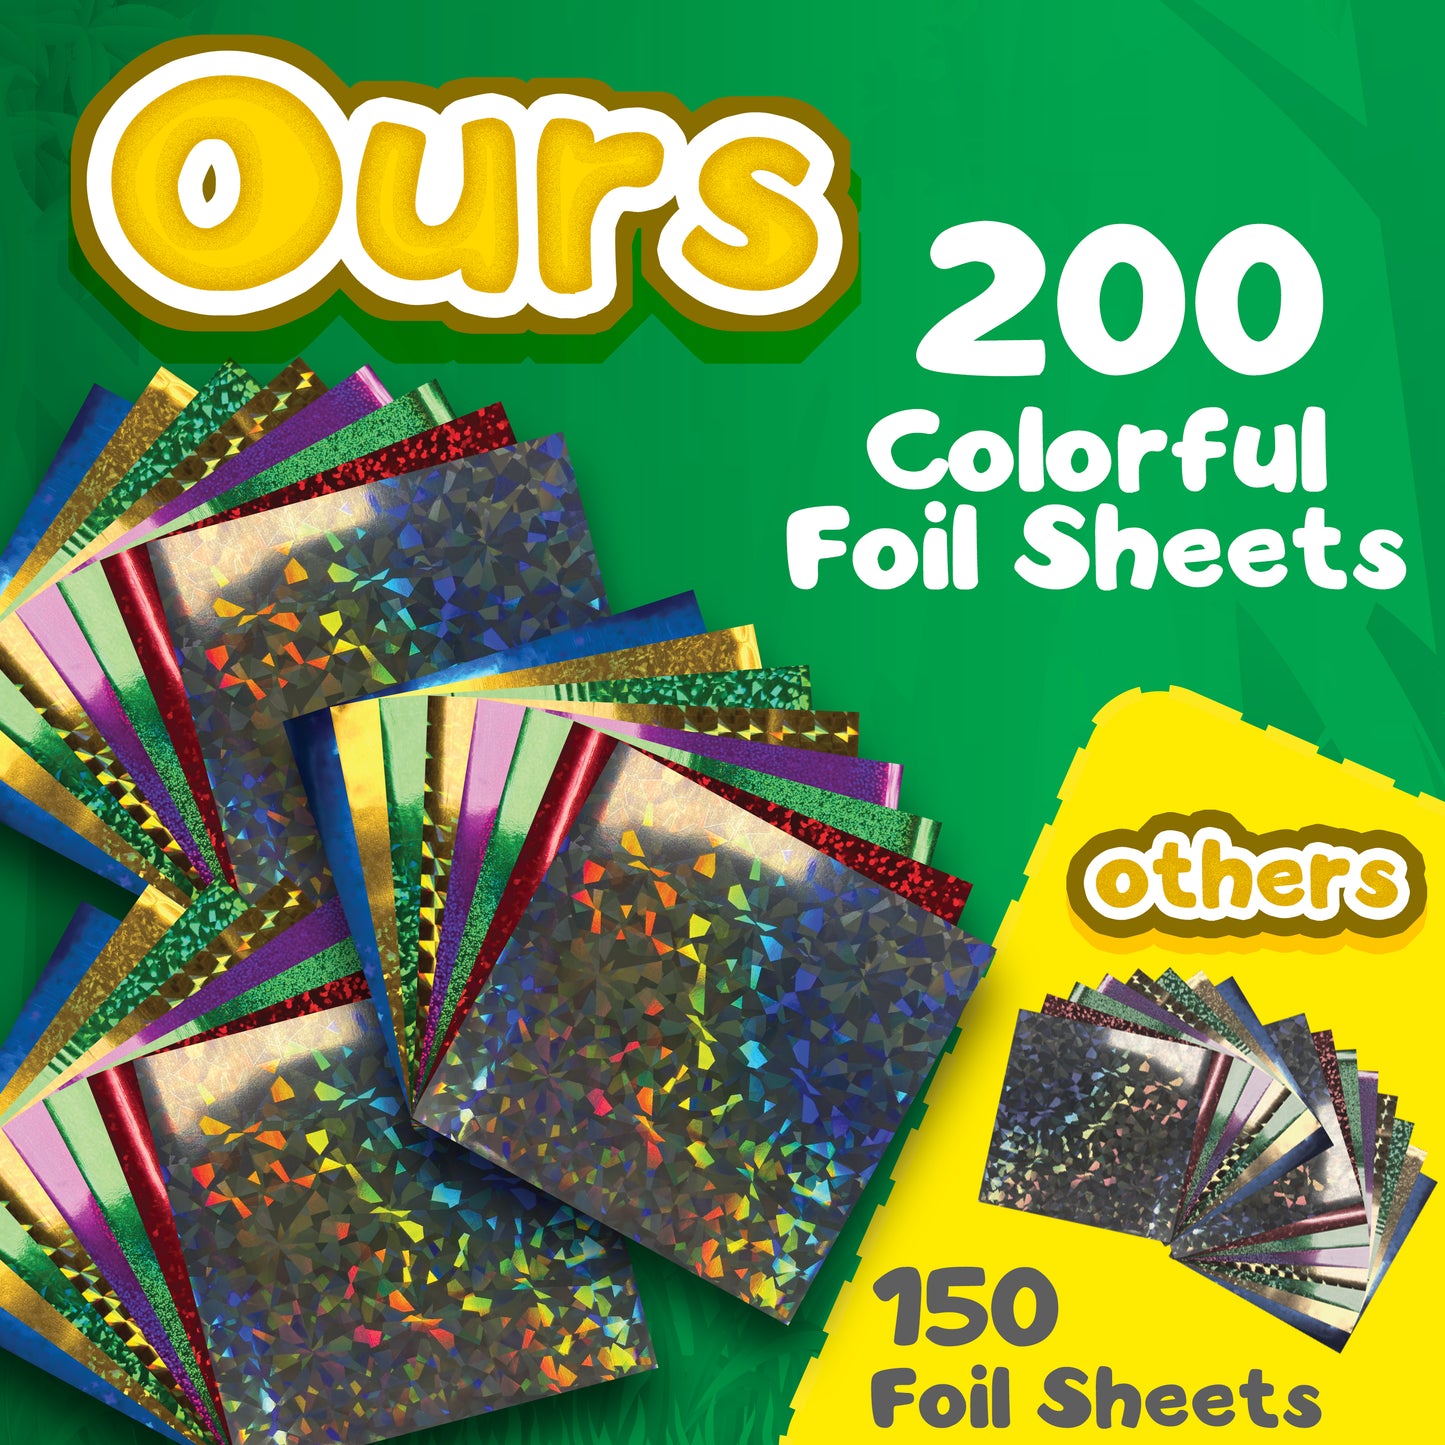 Bambibo Foil Craft for Kids - Mega Pack, 200 Foil Art Craft Sheets | 15 Canvases Foil Fantasy Craft Kits | Foil Crafts Foil Stickers for Kids | DIY Birthday Gifts for Girls Boys Ages 4 5 6 7 8